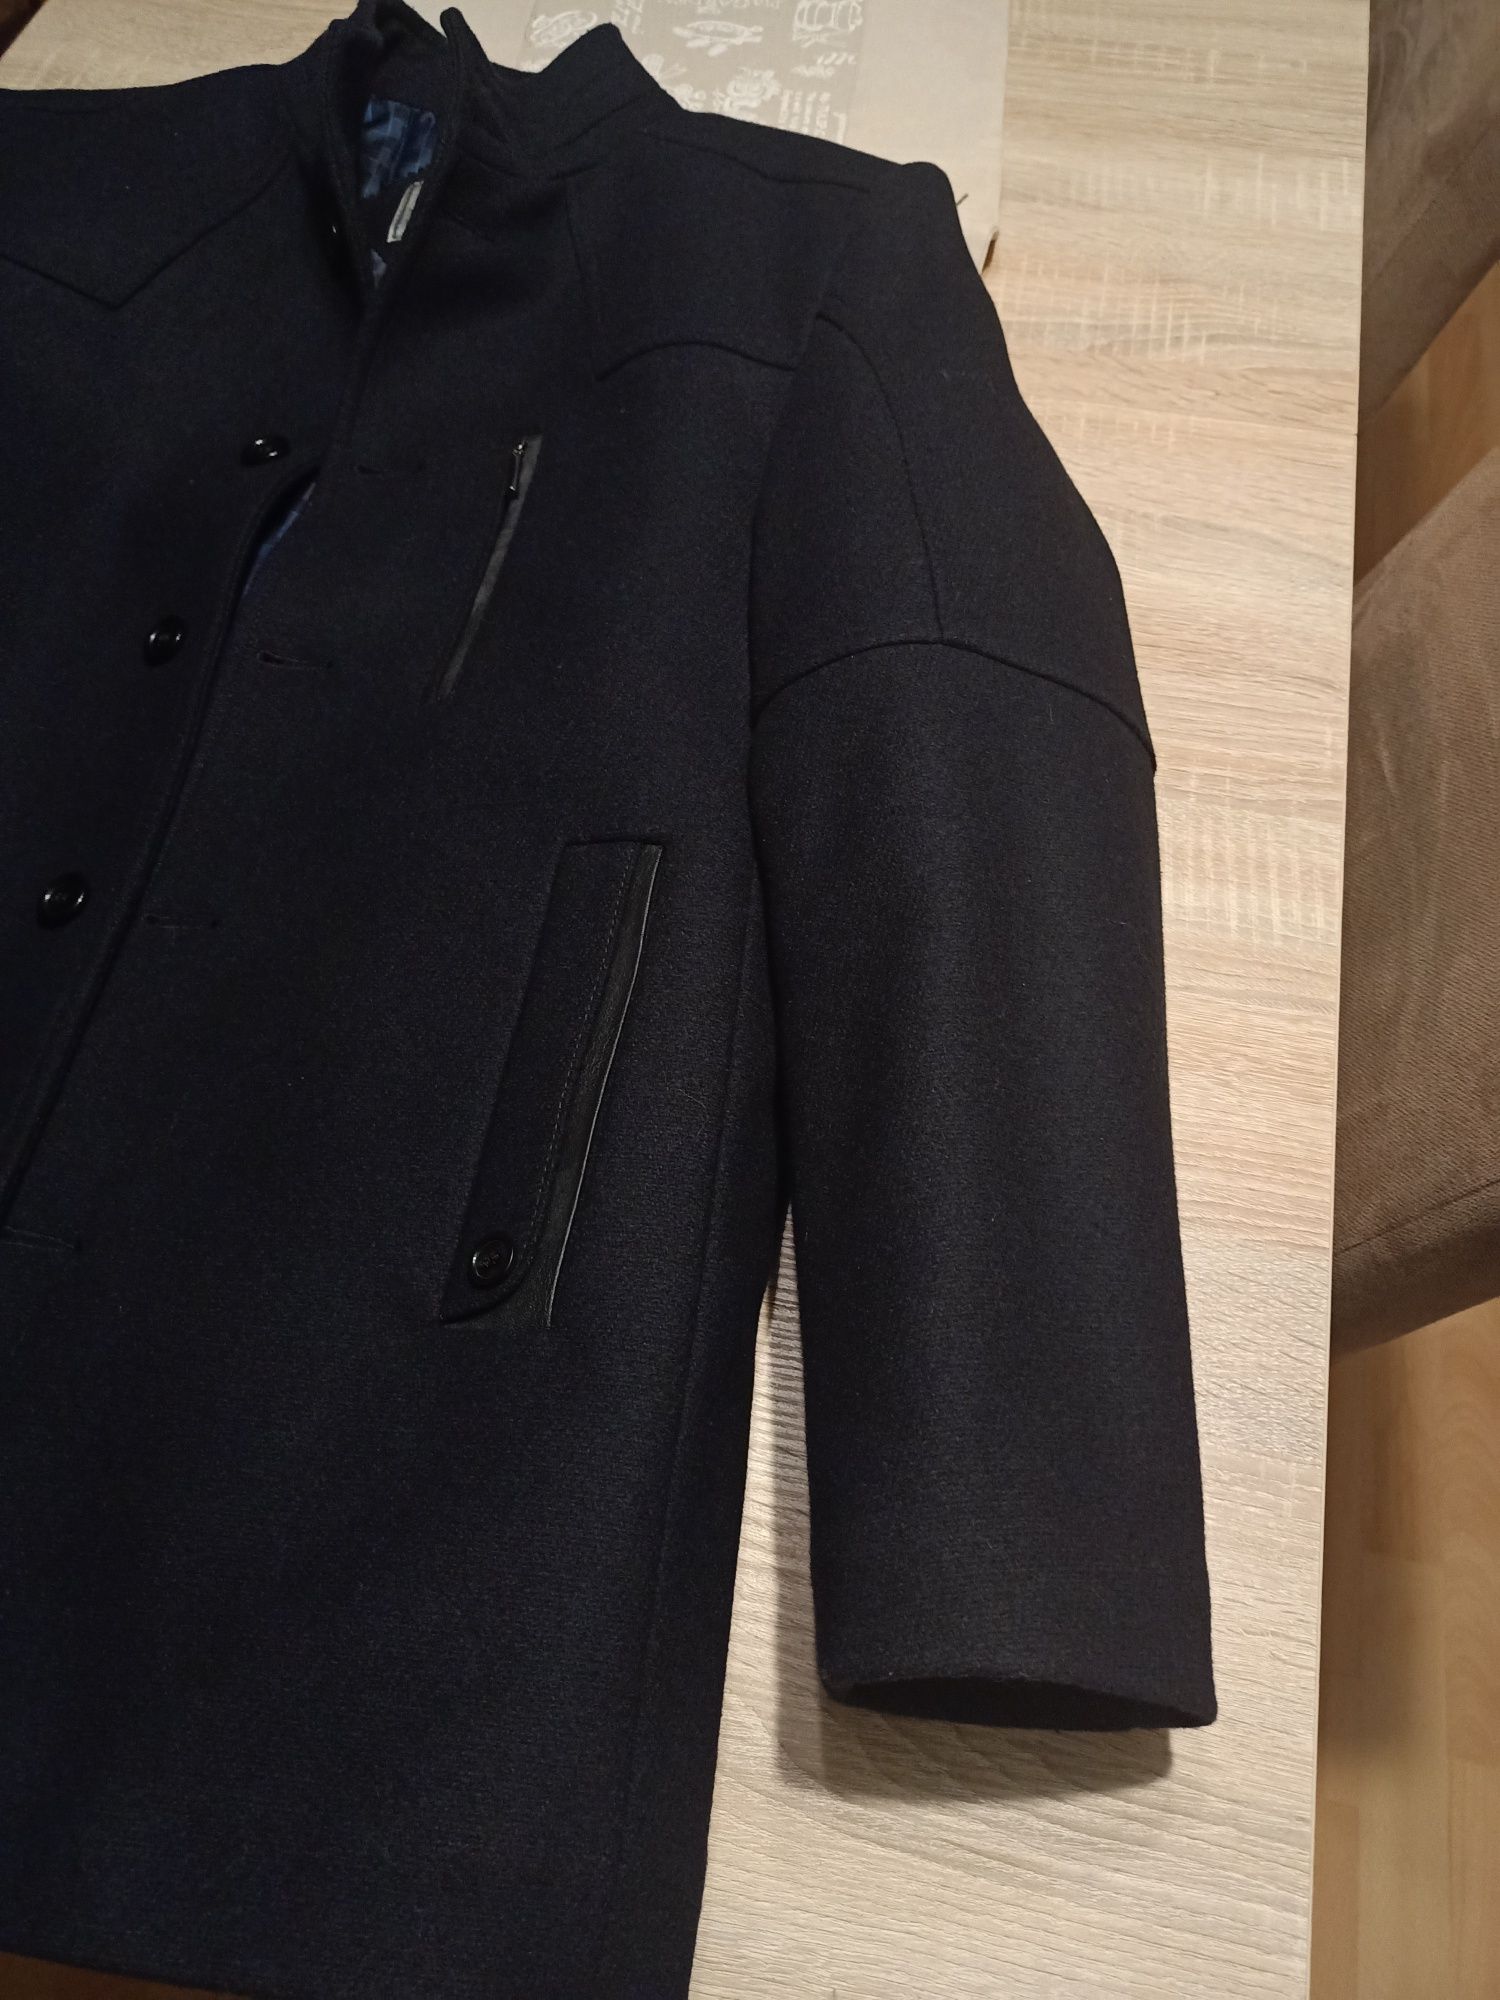 Płaszcz męski rozmiar L w kolorze czarnym.